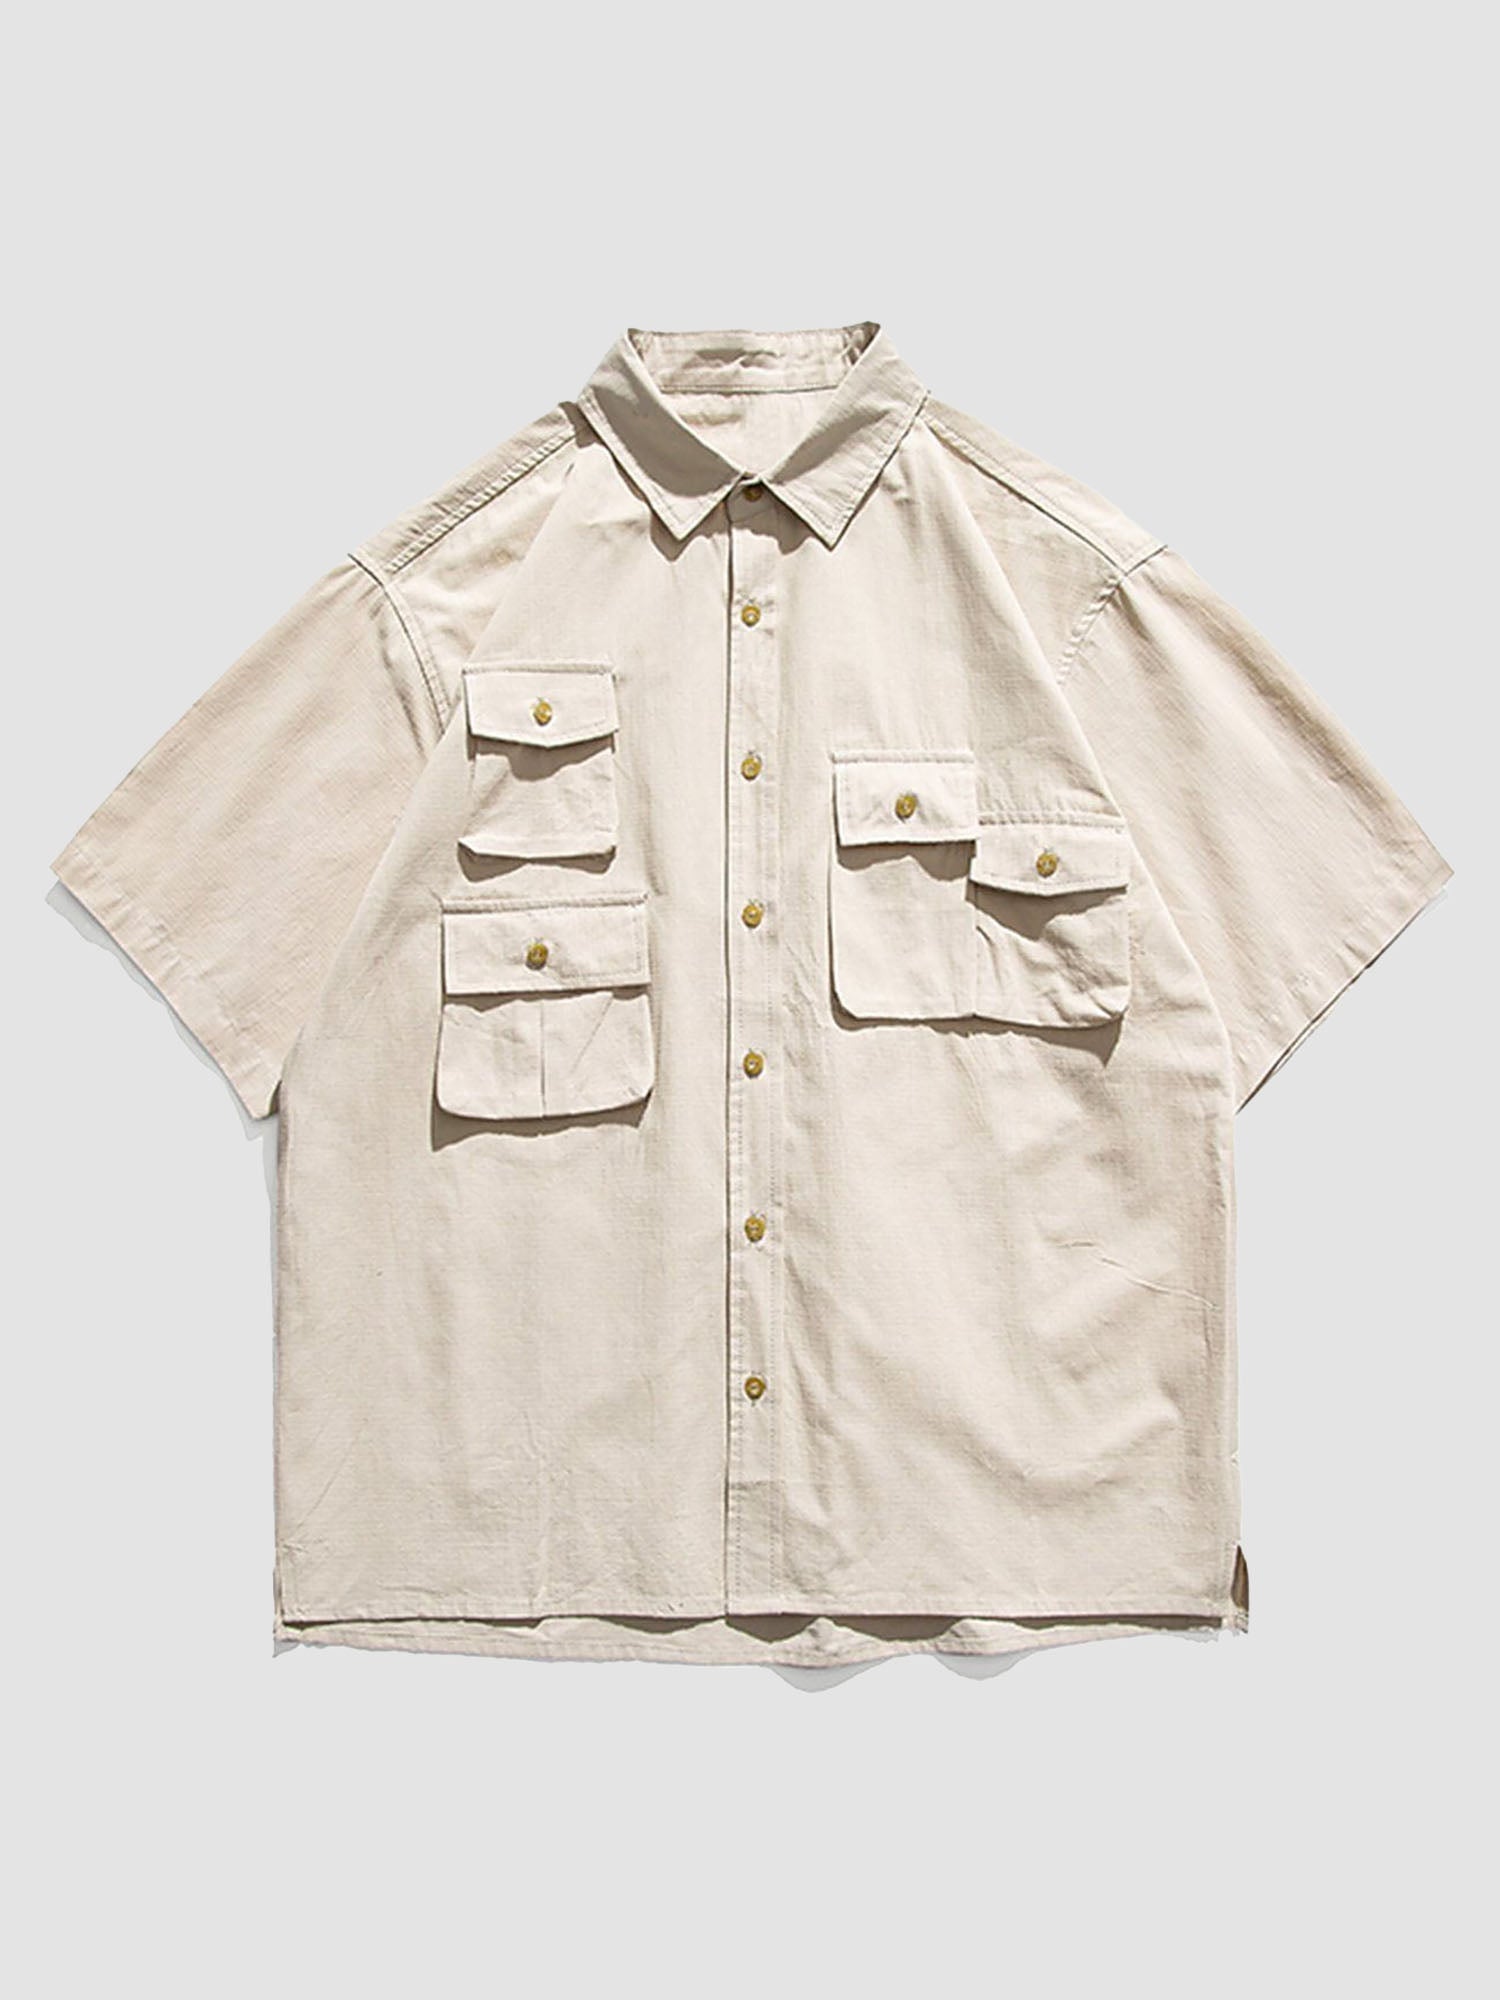 JUSTNOTAG Special Pocket Design Short Sleeve Shirts